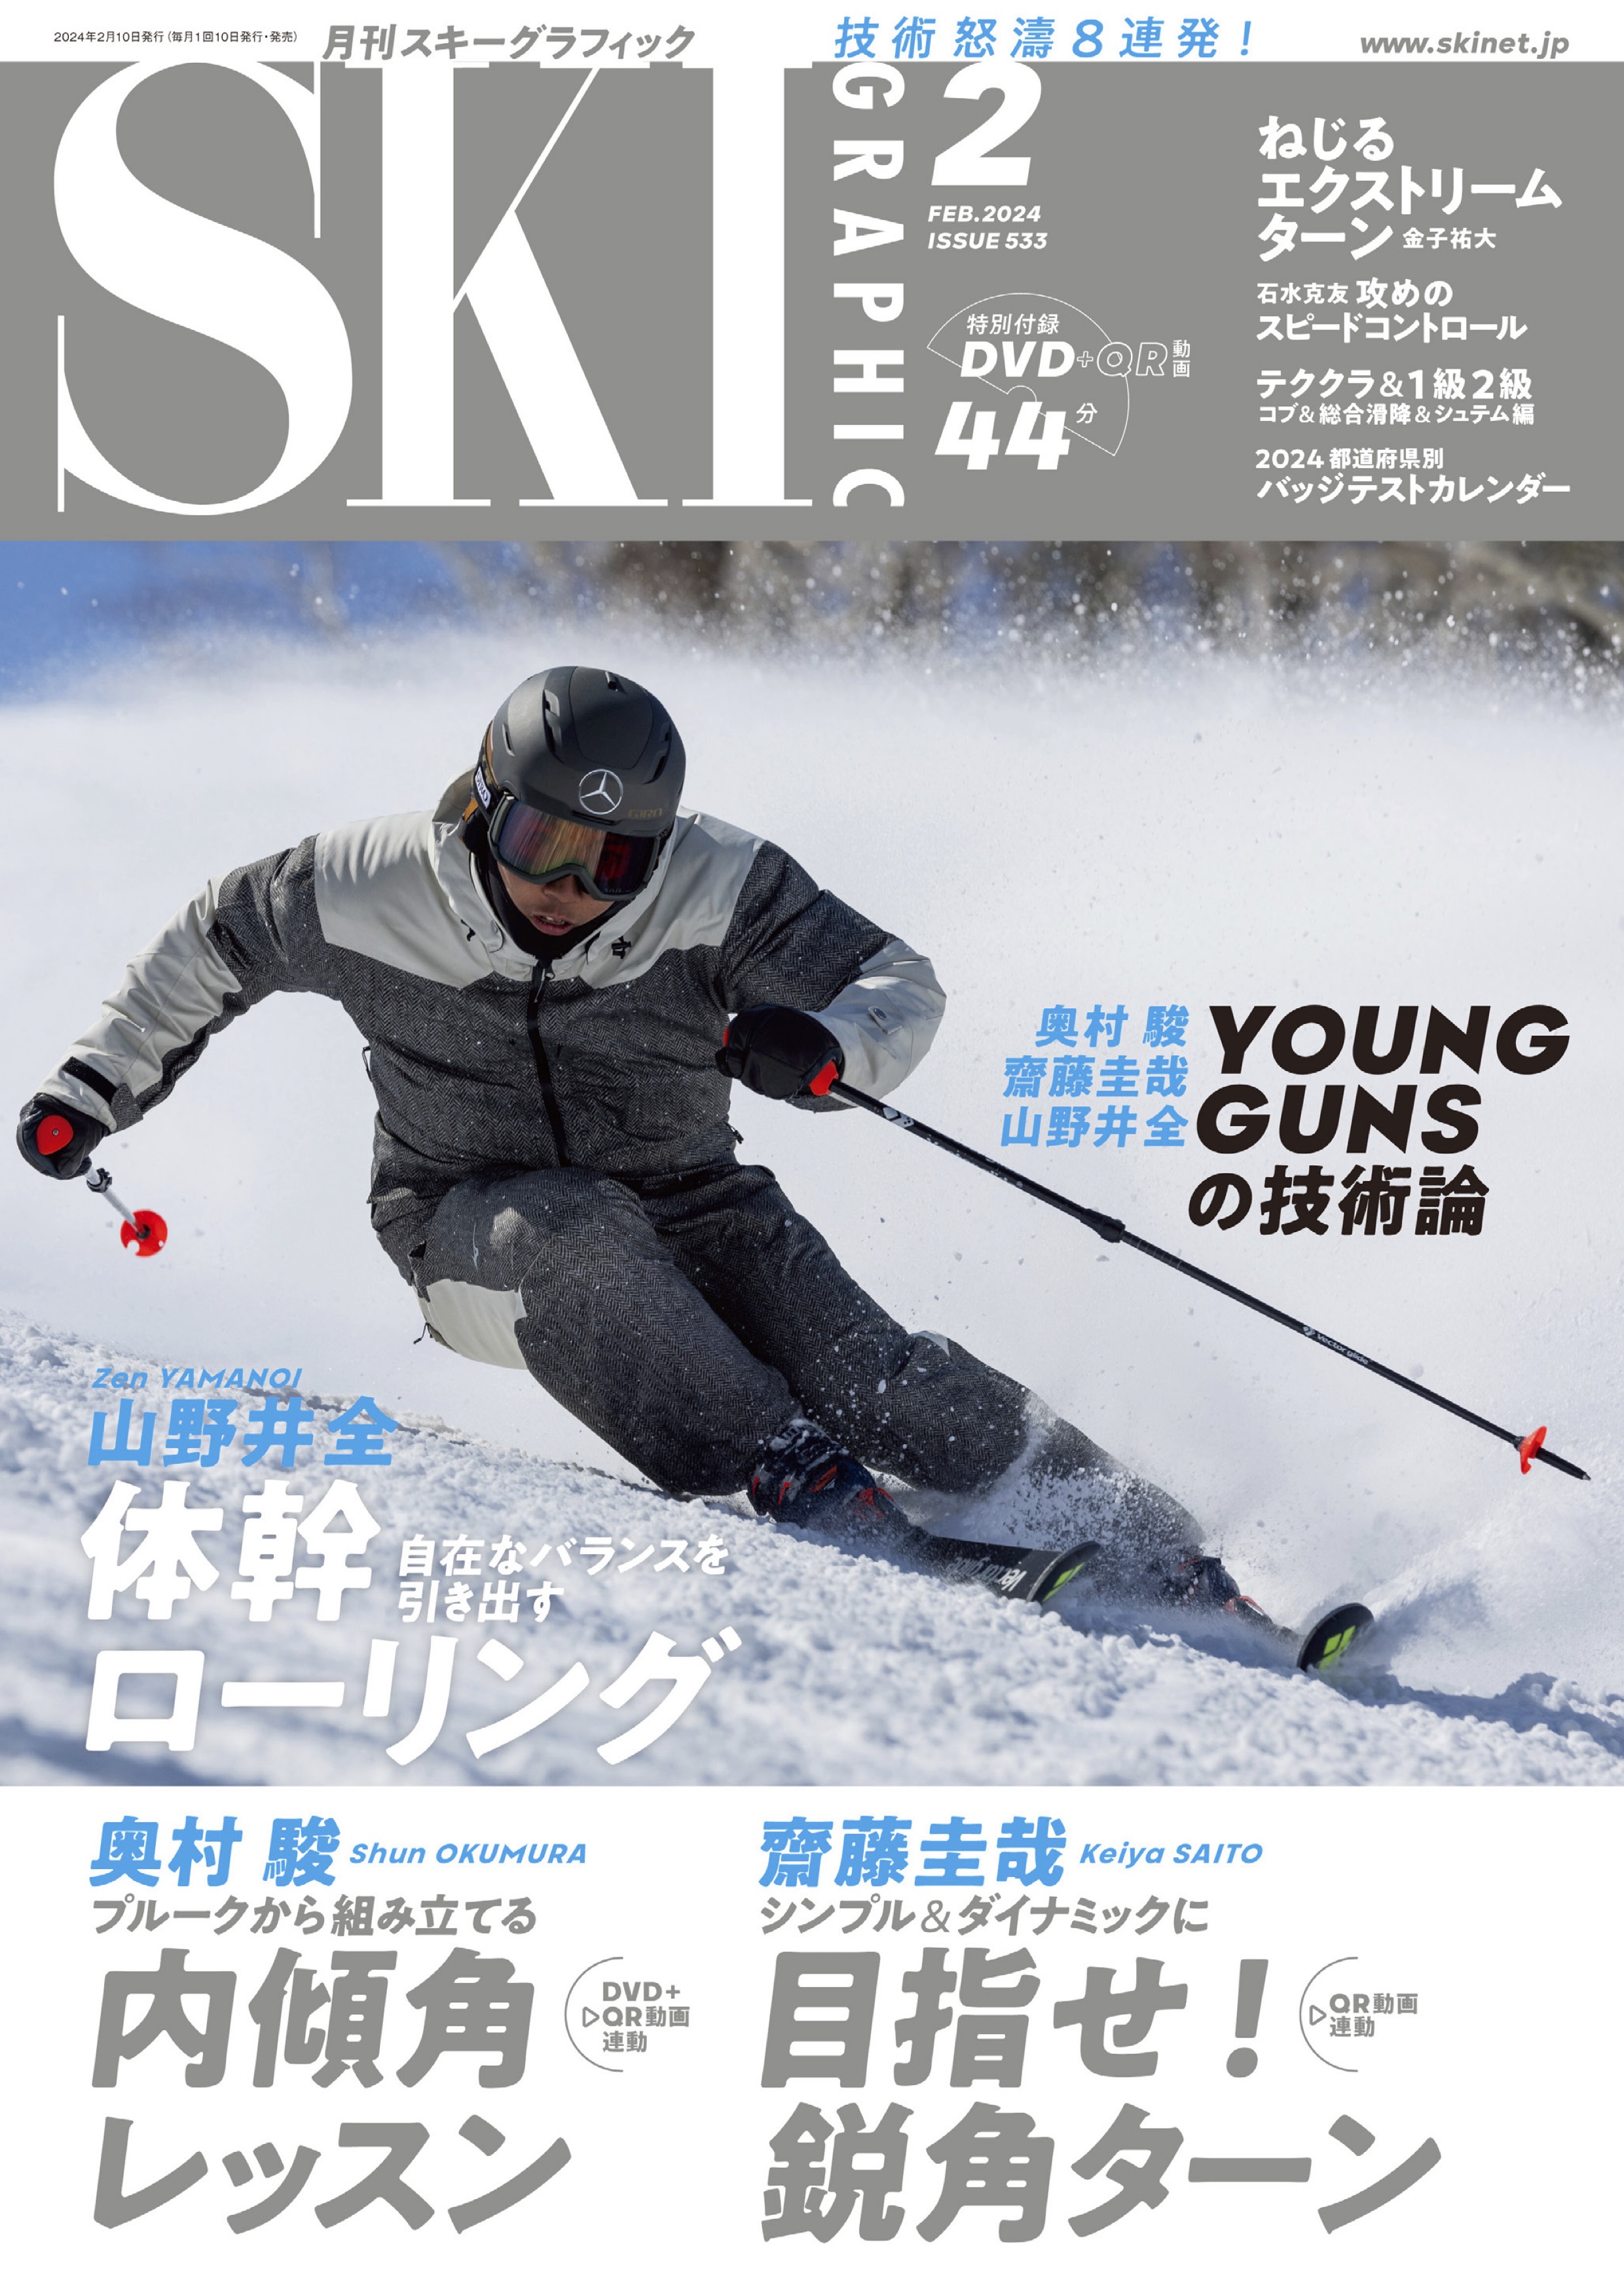 スキーグラフィックNo.533 - スキーグラフィック編集部 - 漫画・ラノベ